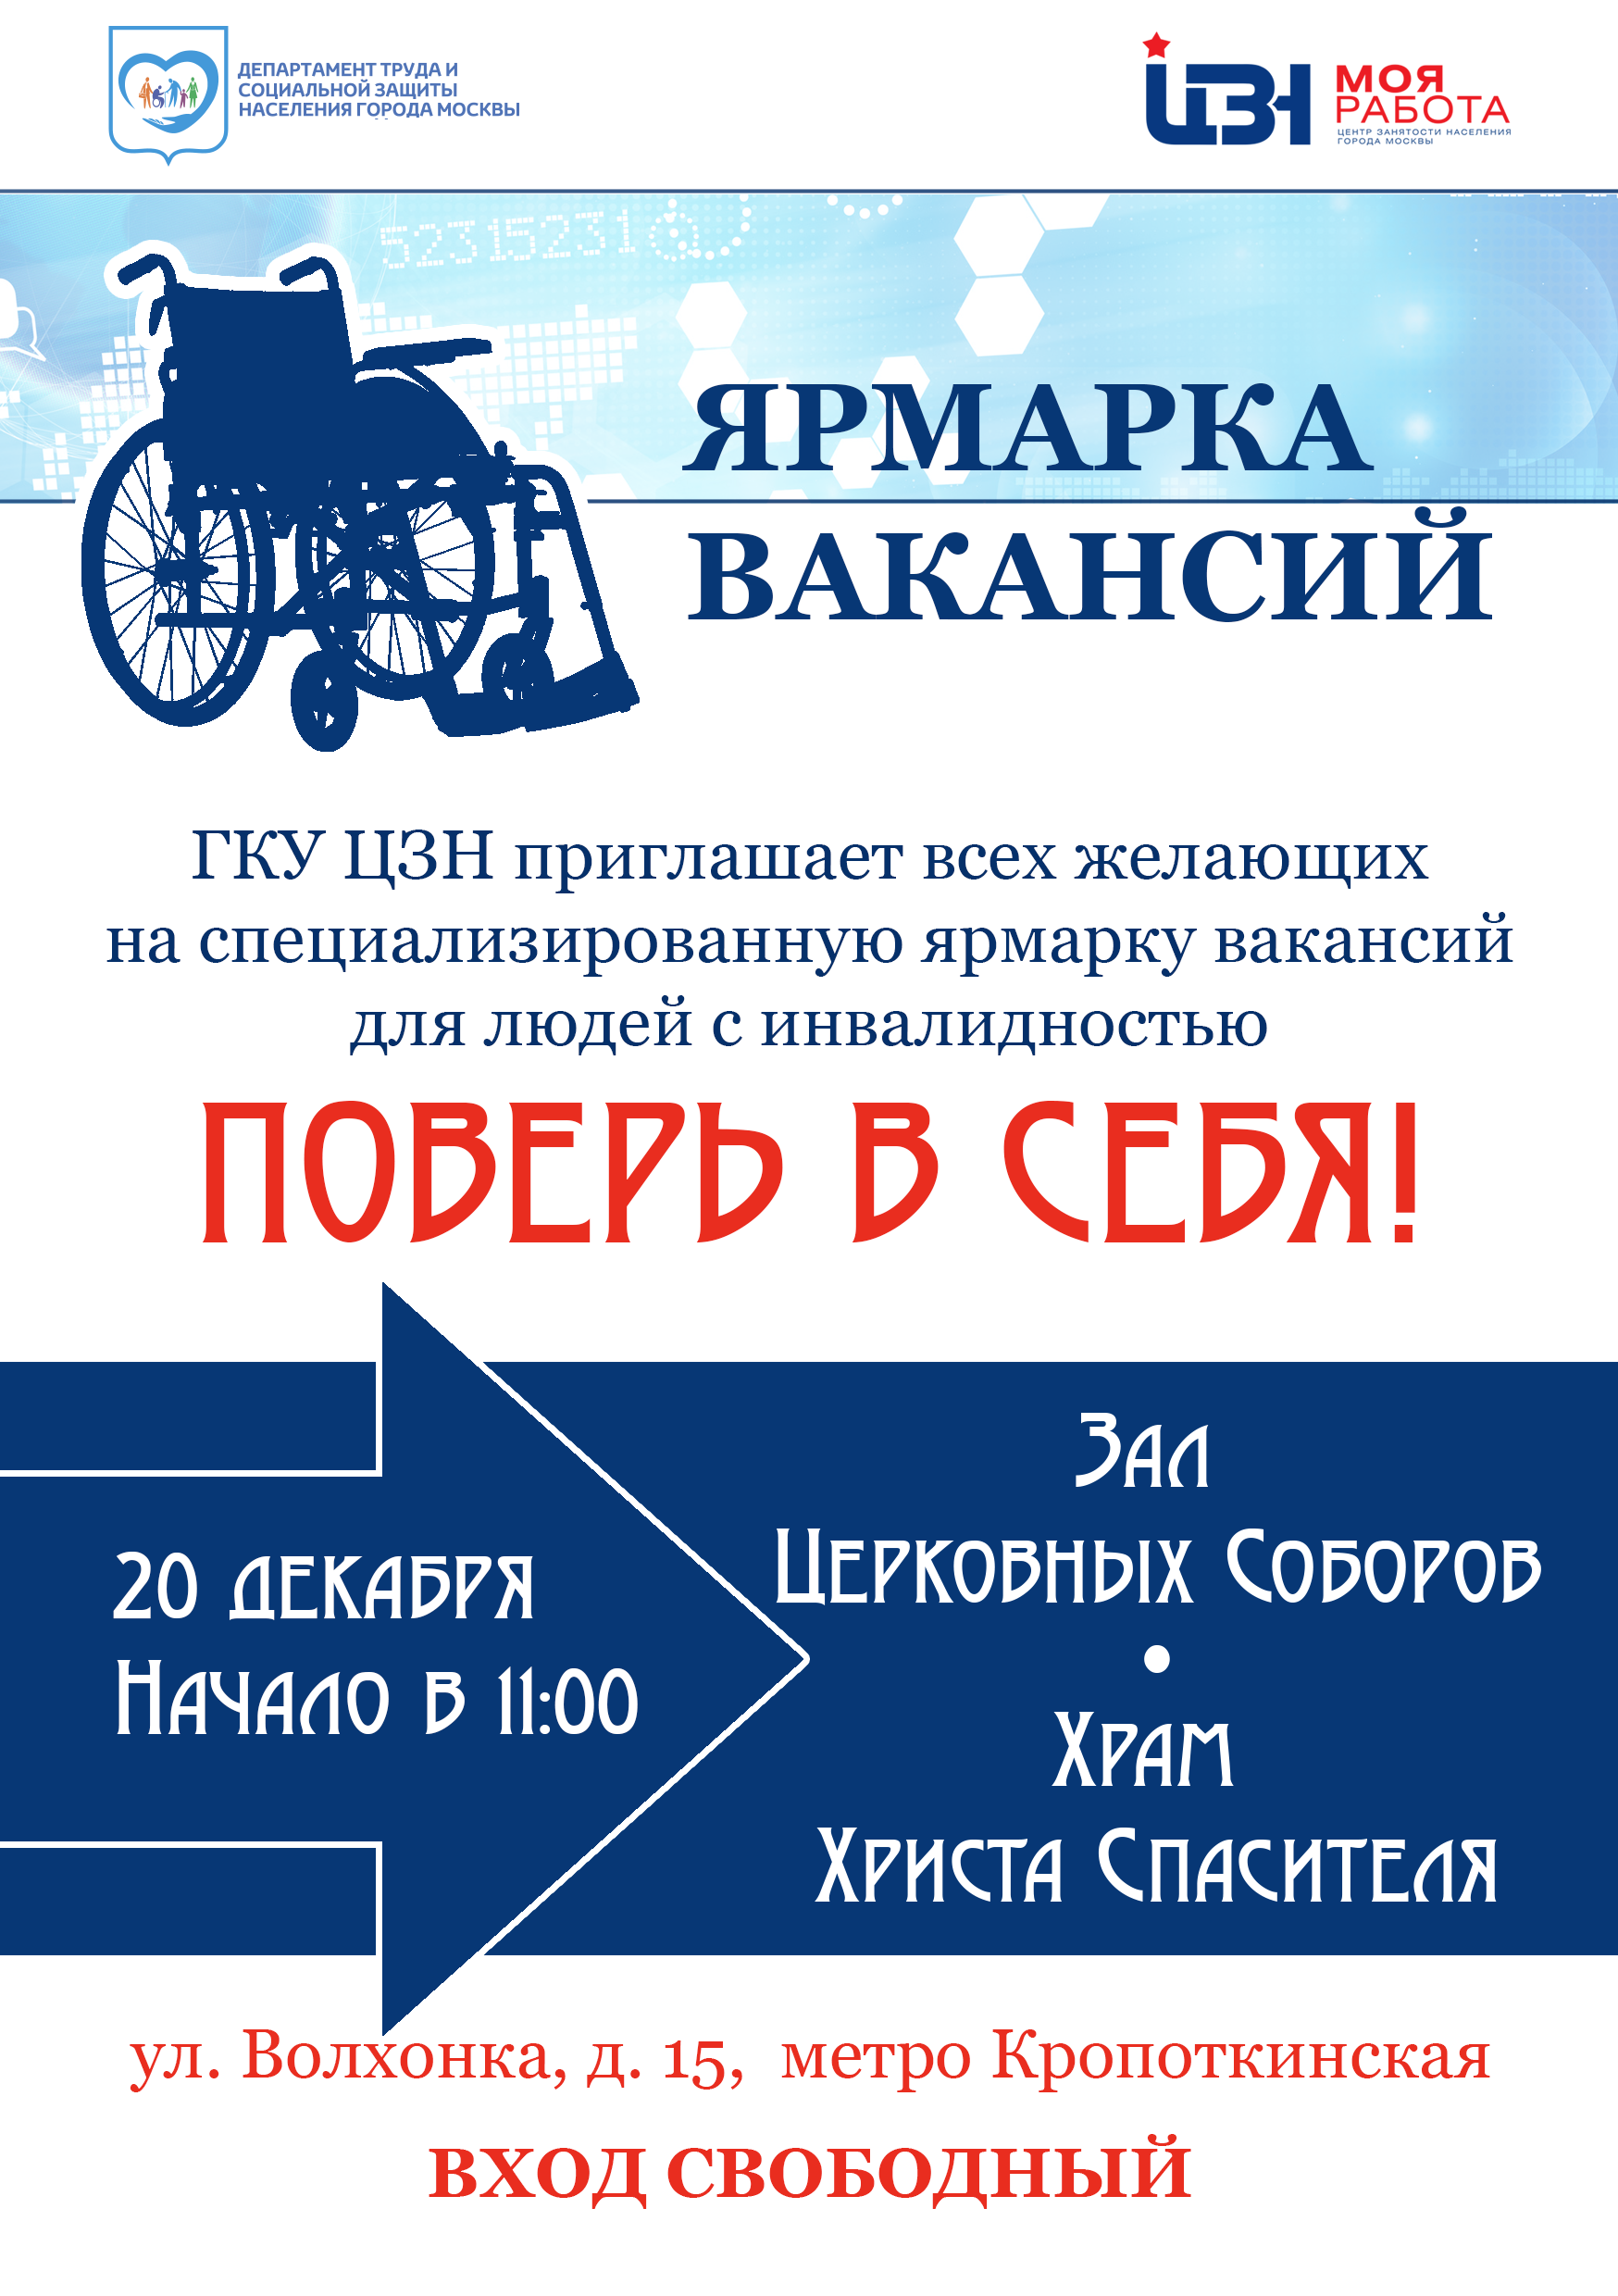 Специализированная ярмарка вакансий для инвалидов